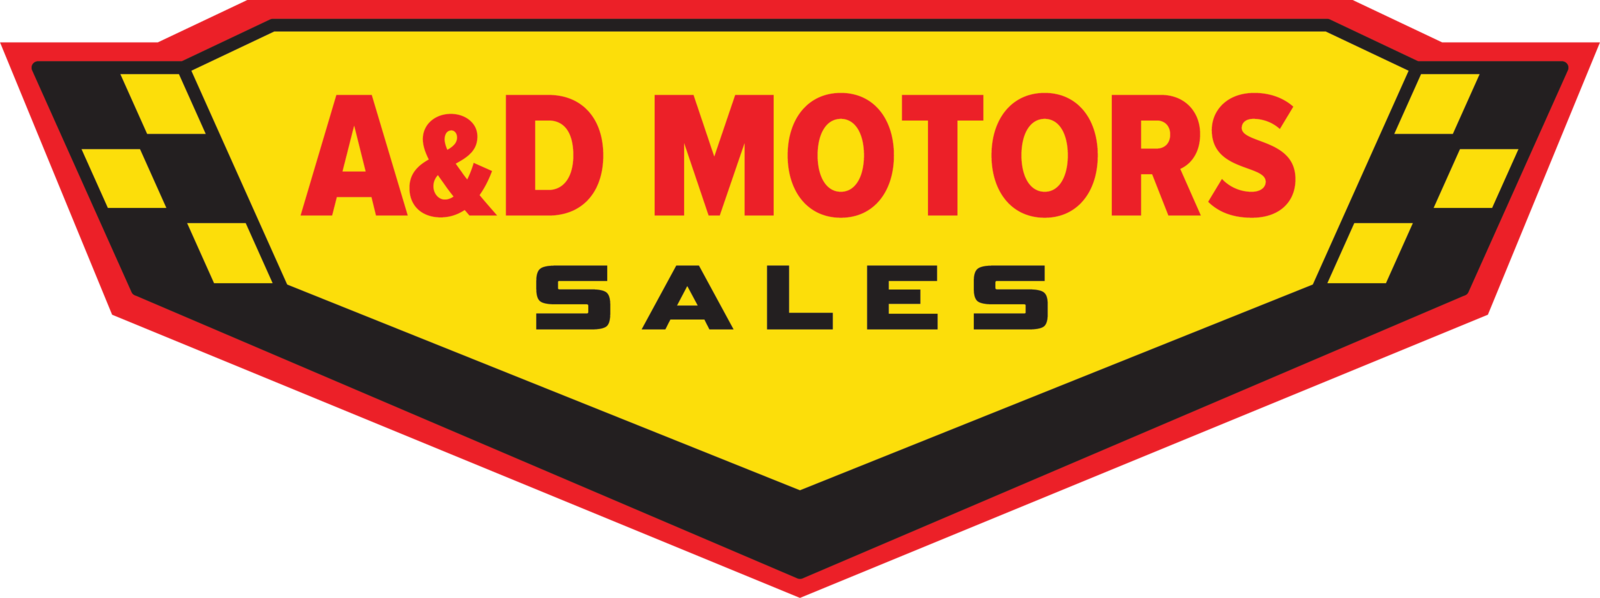 A&d Motors Sales - Sign (1600x598)